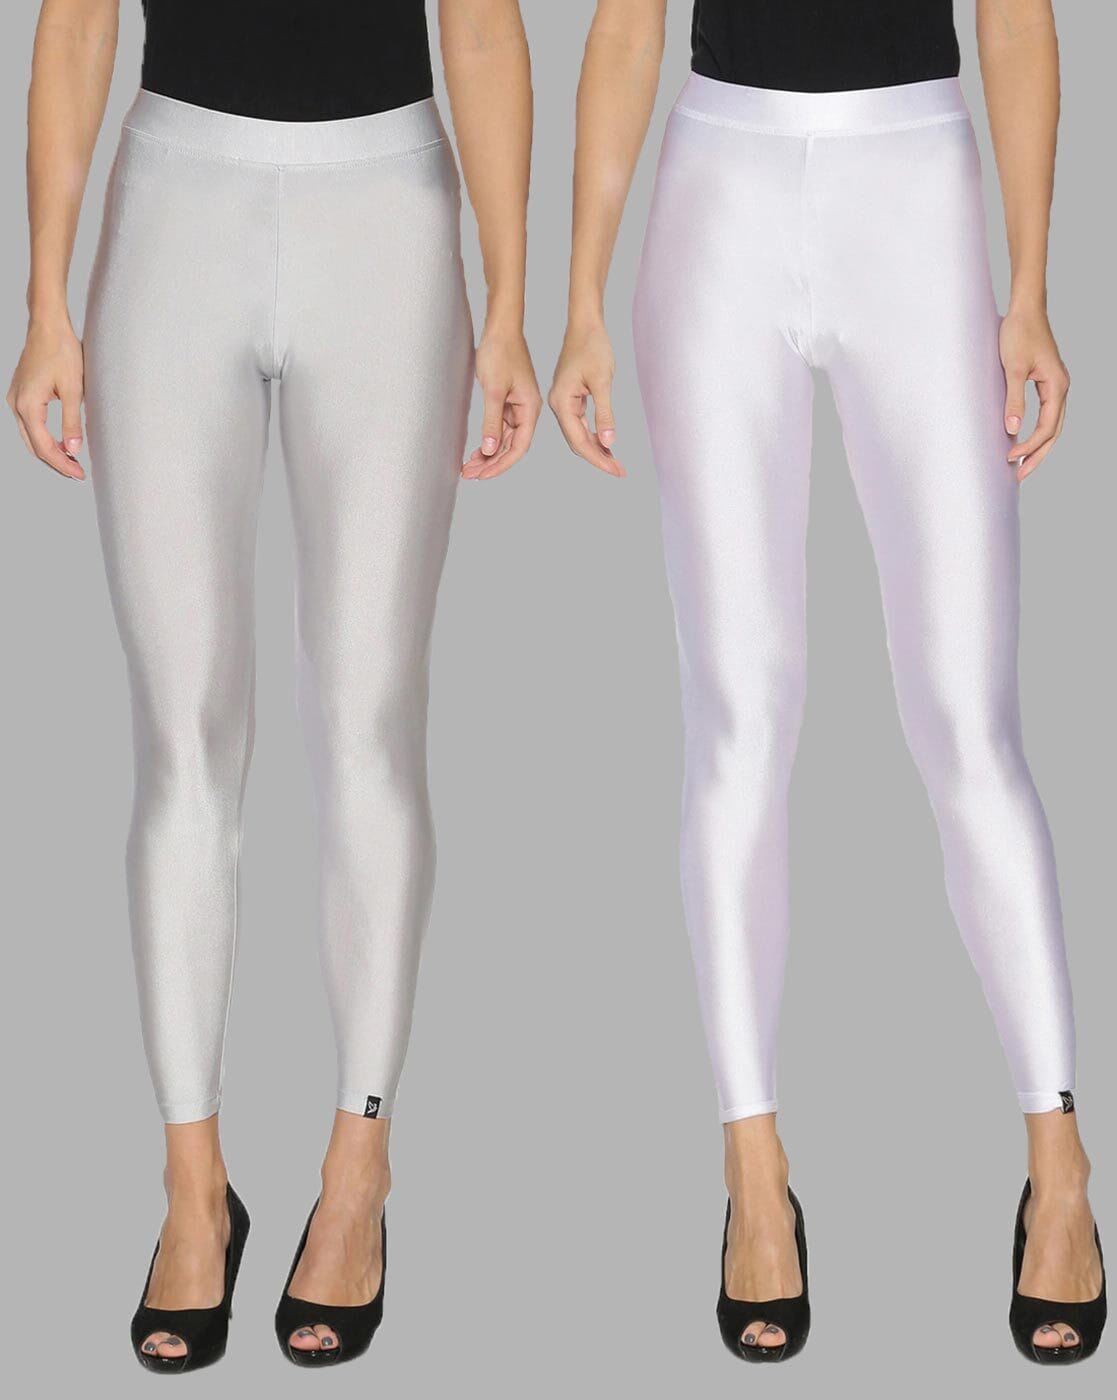 Buy Silver & White Leggings for Women by Twin Birds Online